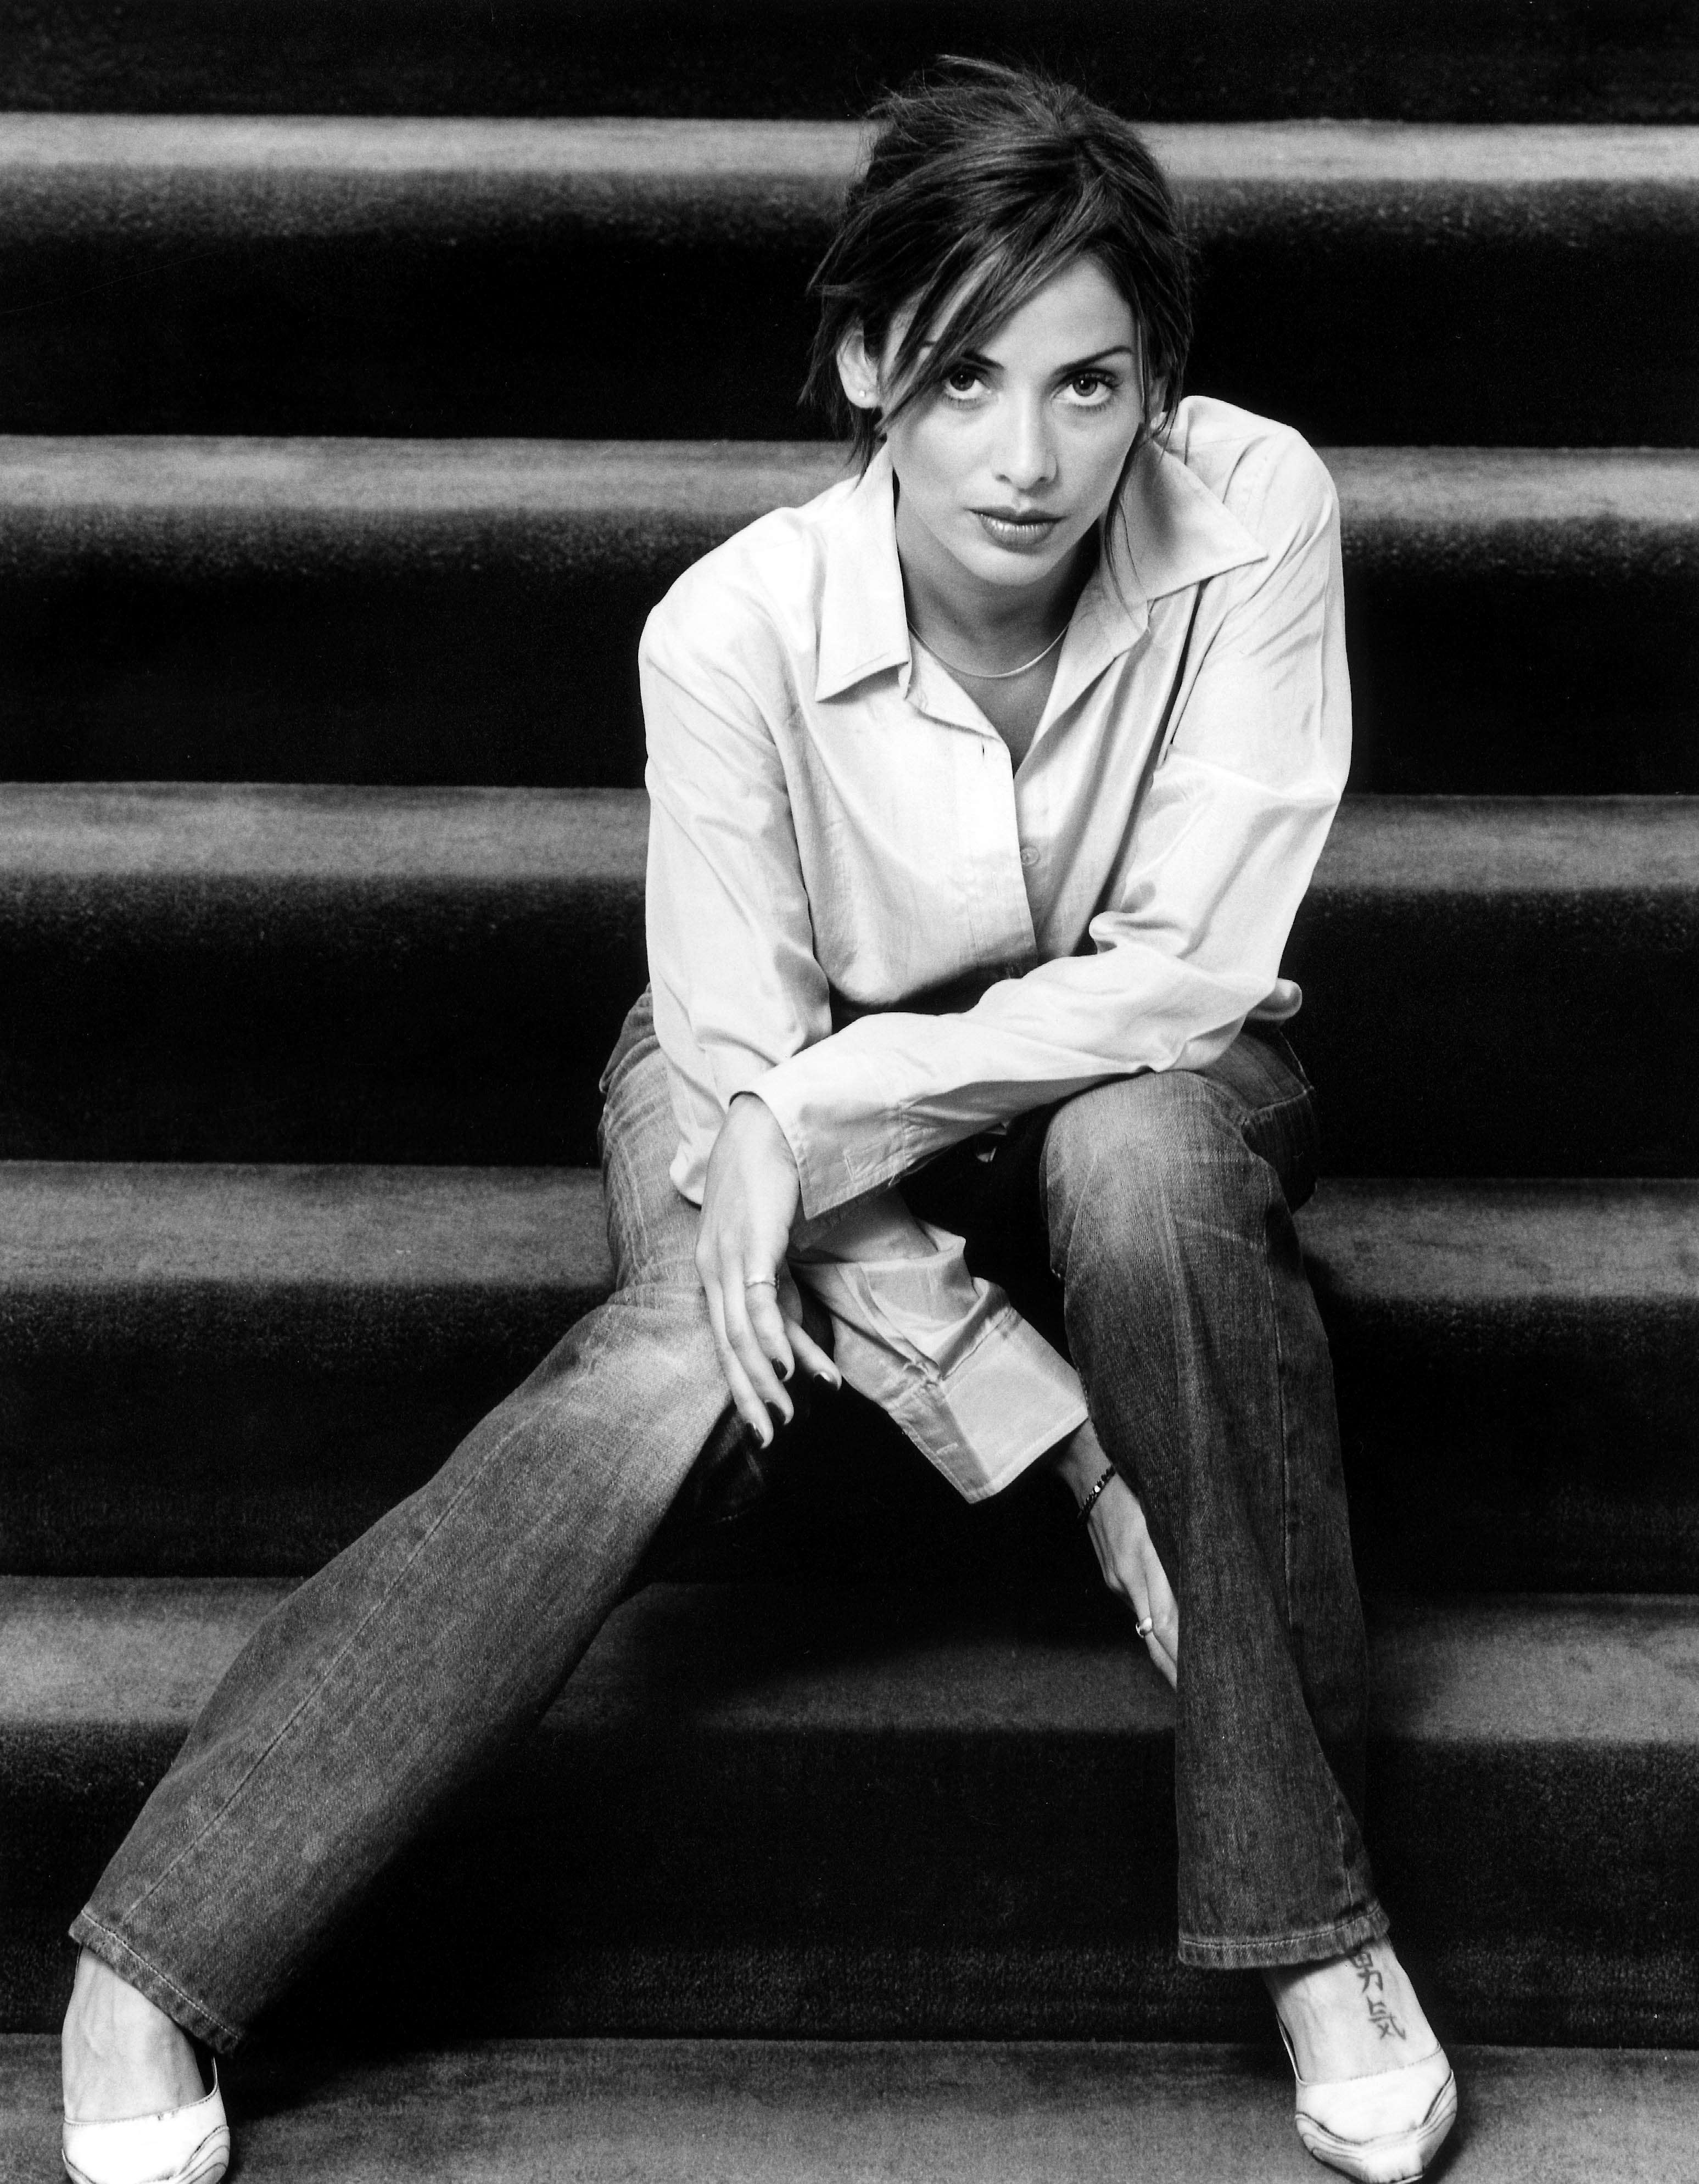 джинсы, лестницы, оттенки серого, Натали Имбрулья, монохромный - обои на рабочий стол